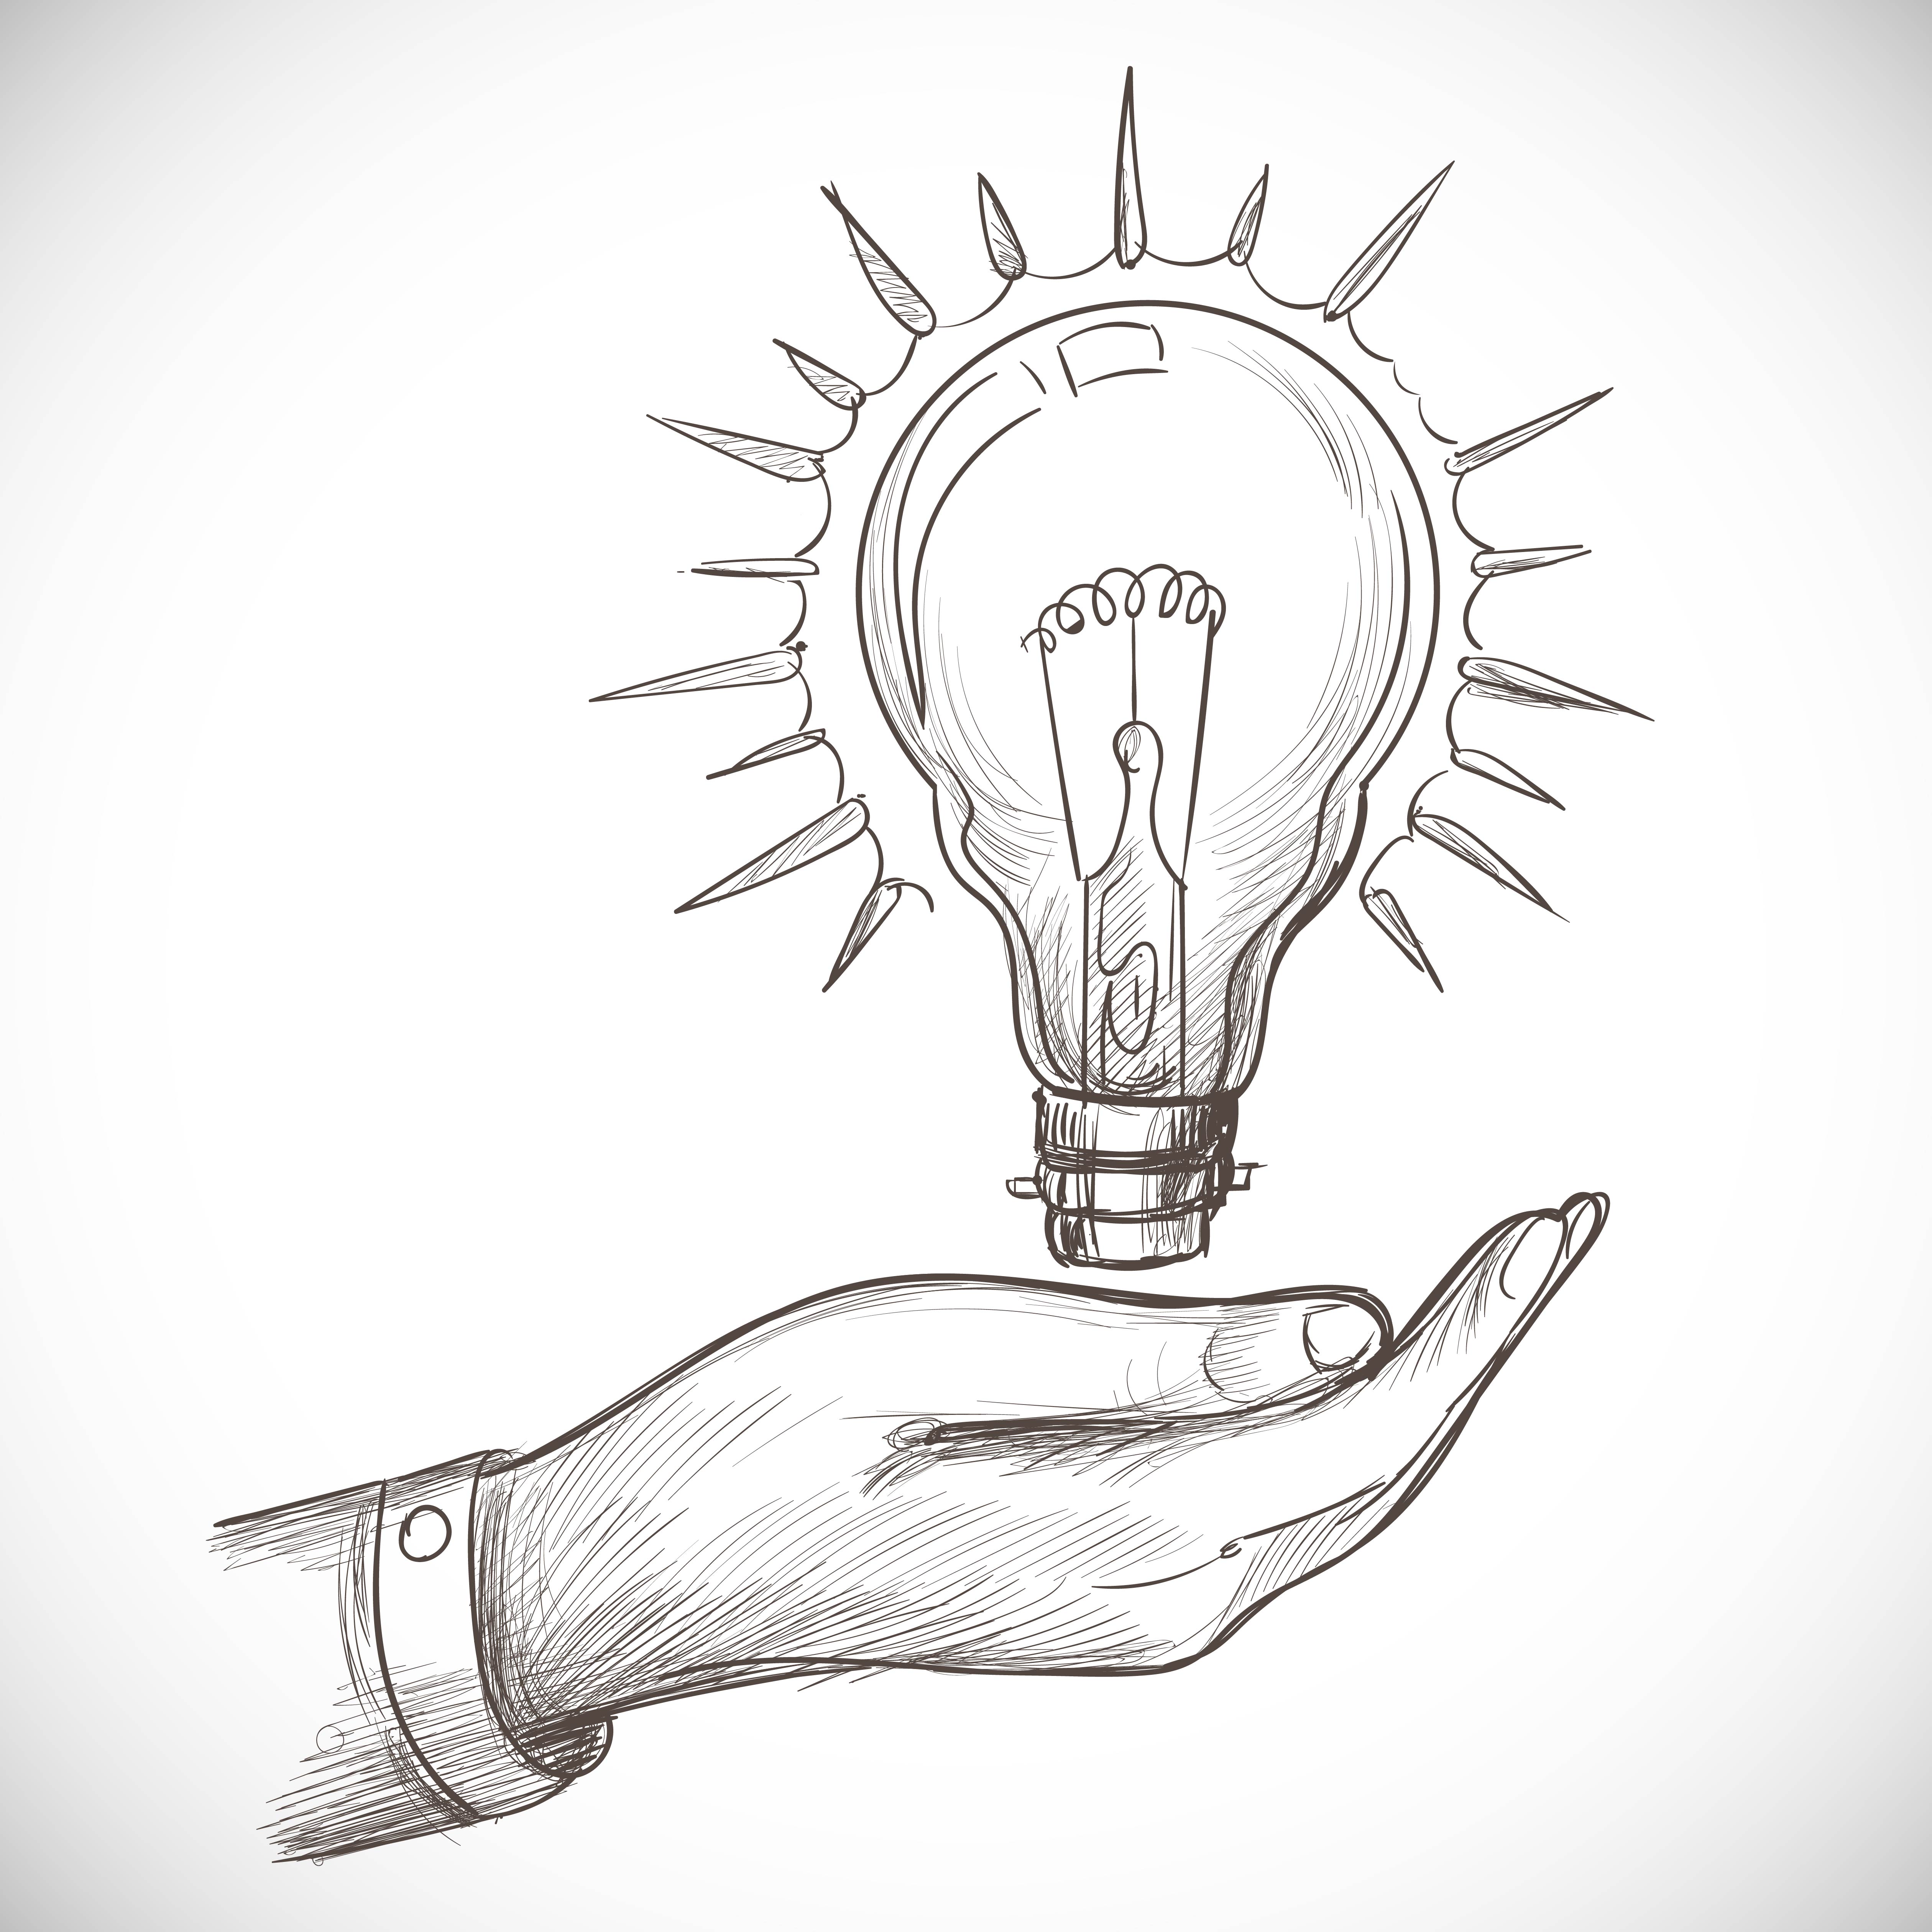 Hand Holding Light Bulb Sketch  Light bulb sketch, Light bulb drawing,  Light bulb illustration